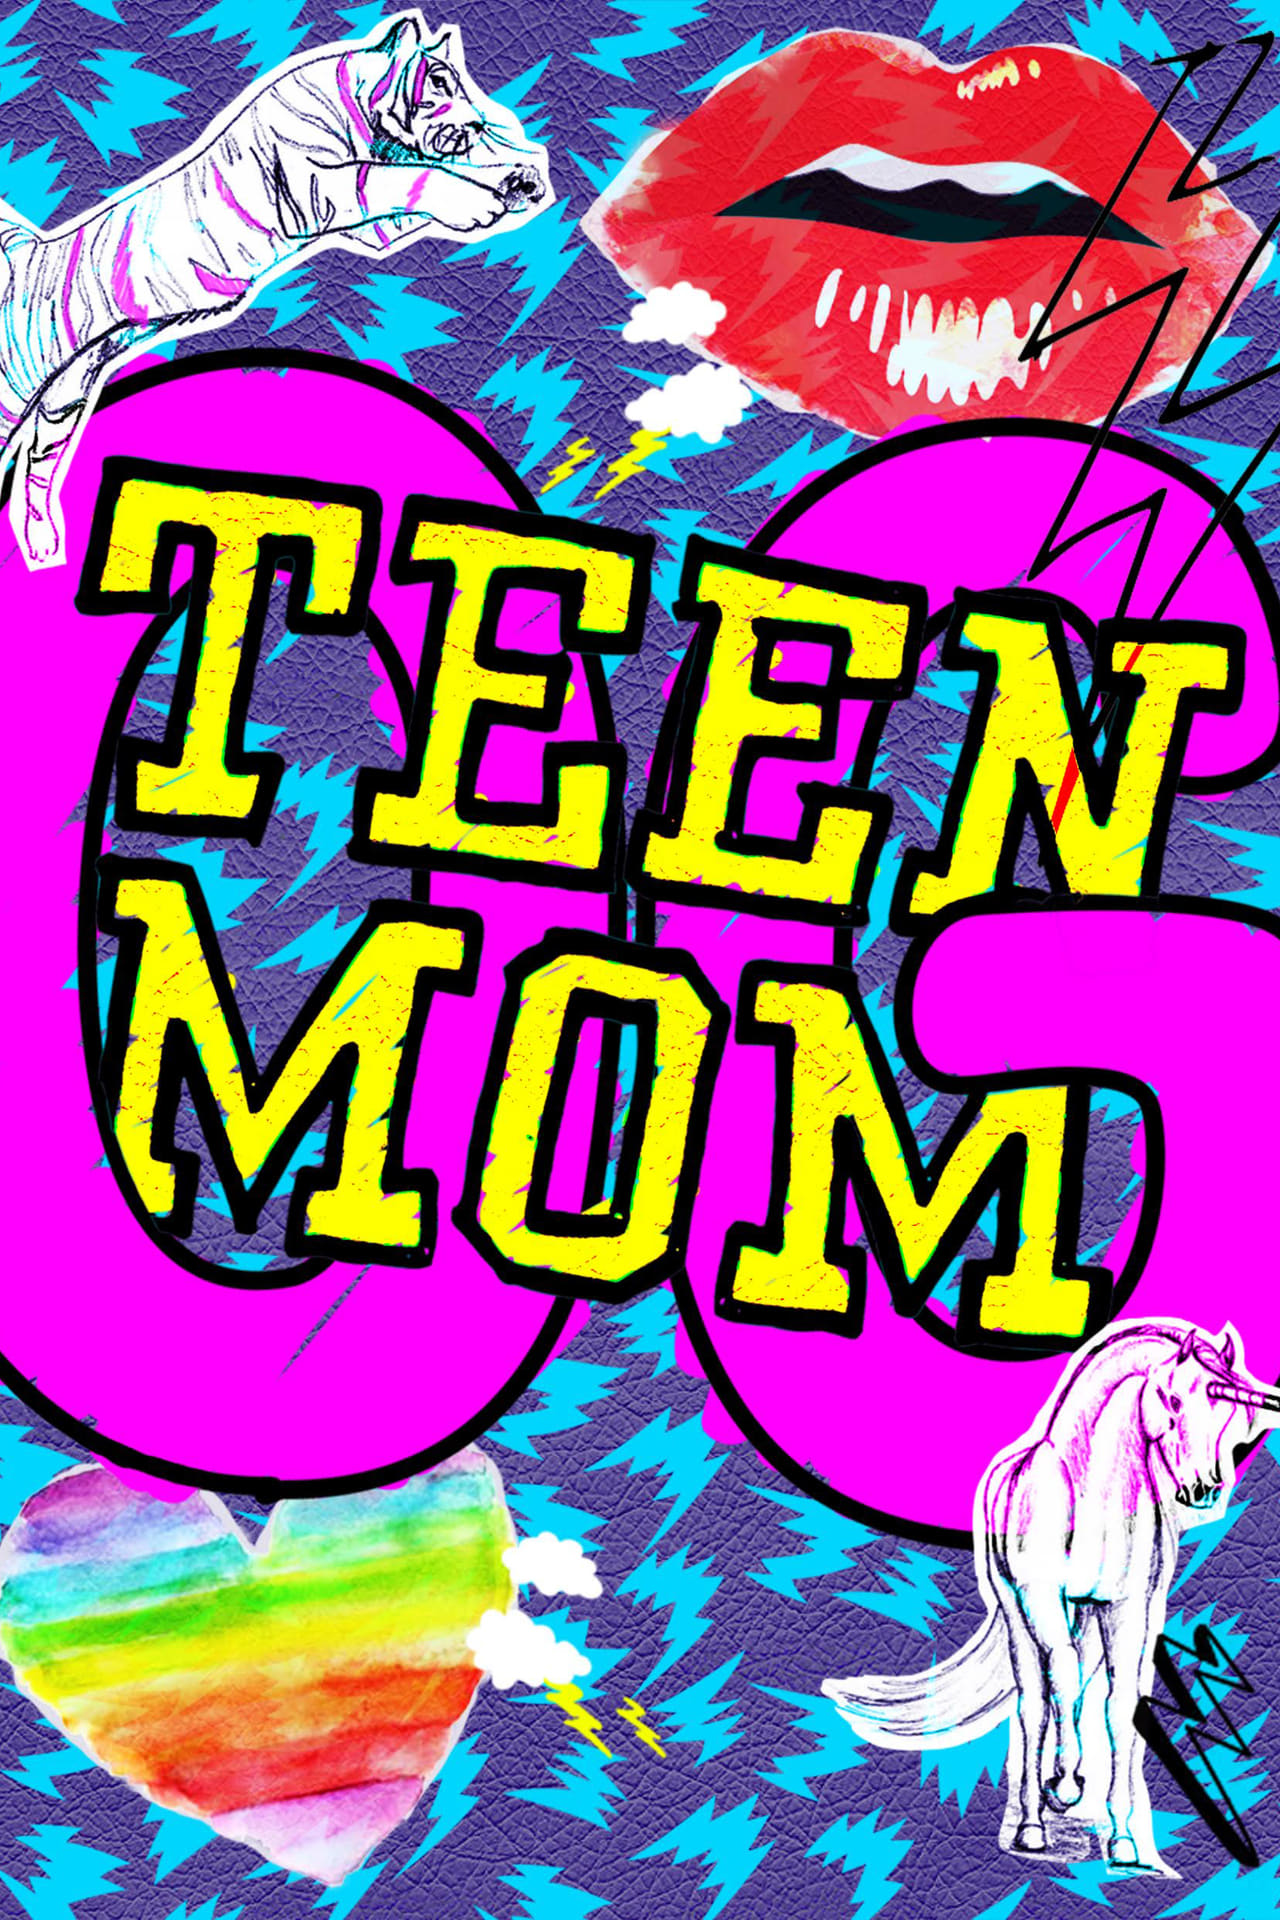 Teen Mom Season 6